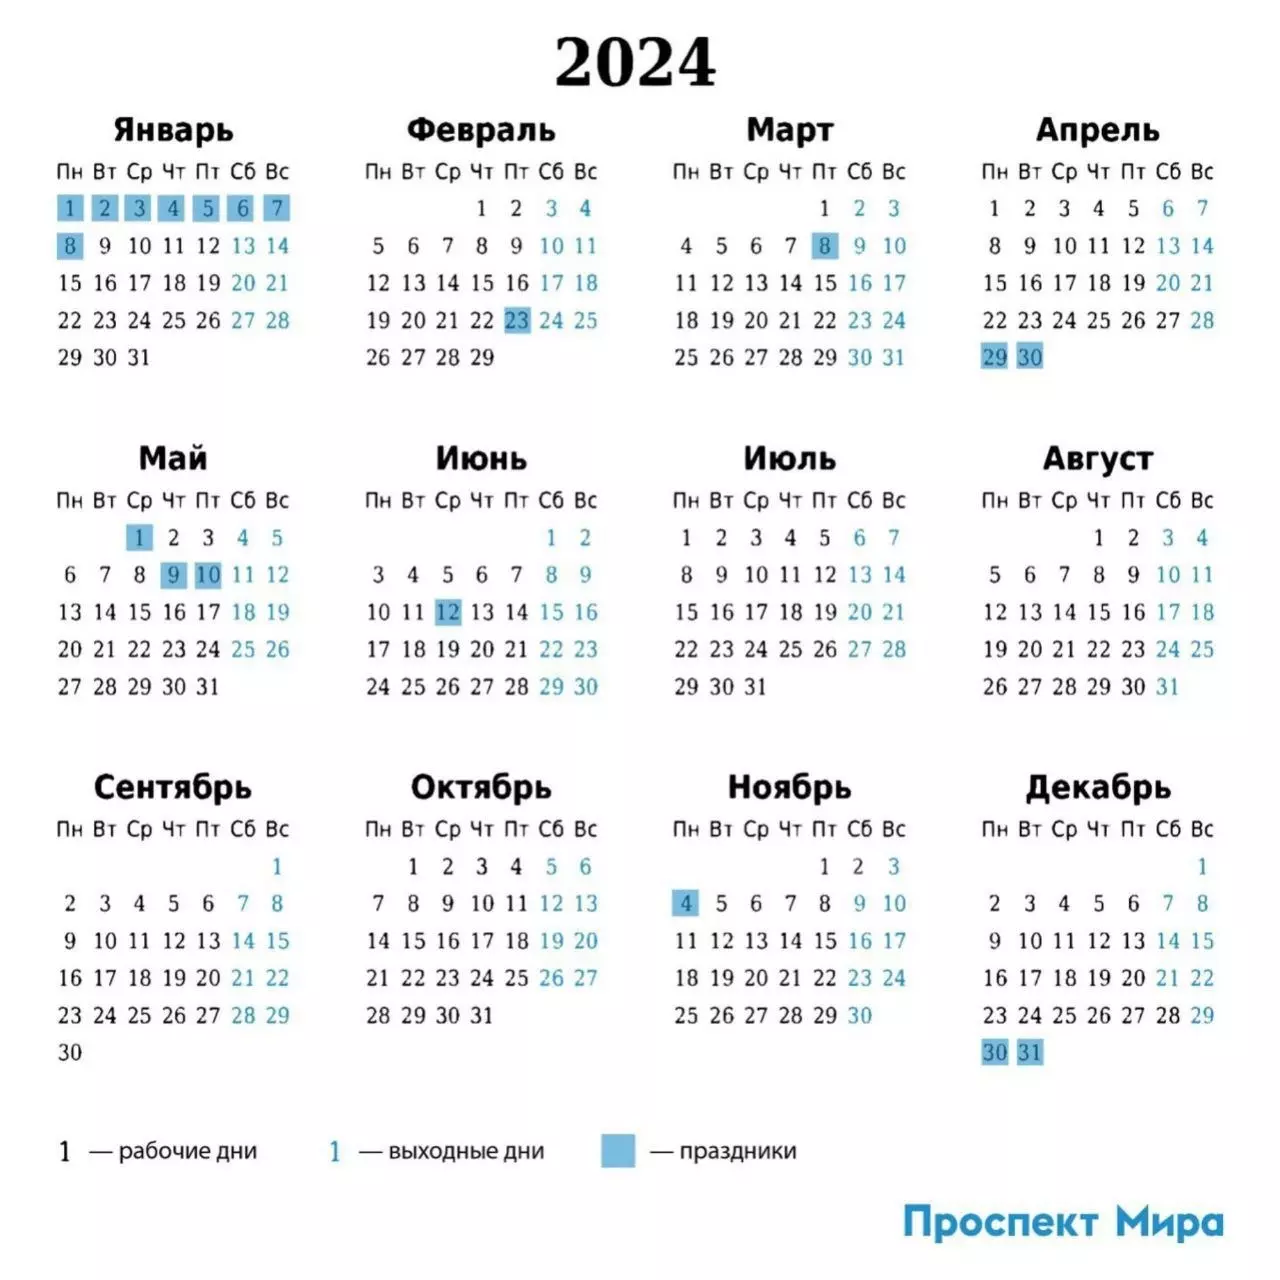 Вот как выглядит календарь праздников на 2024 год